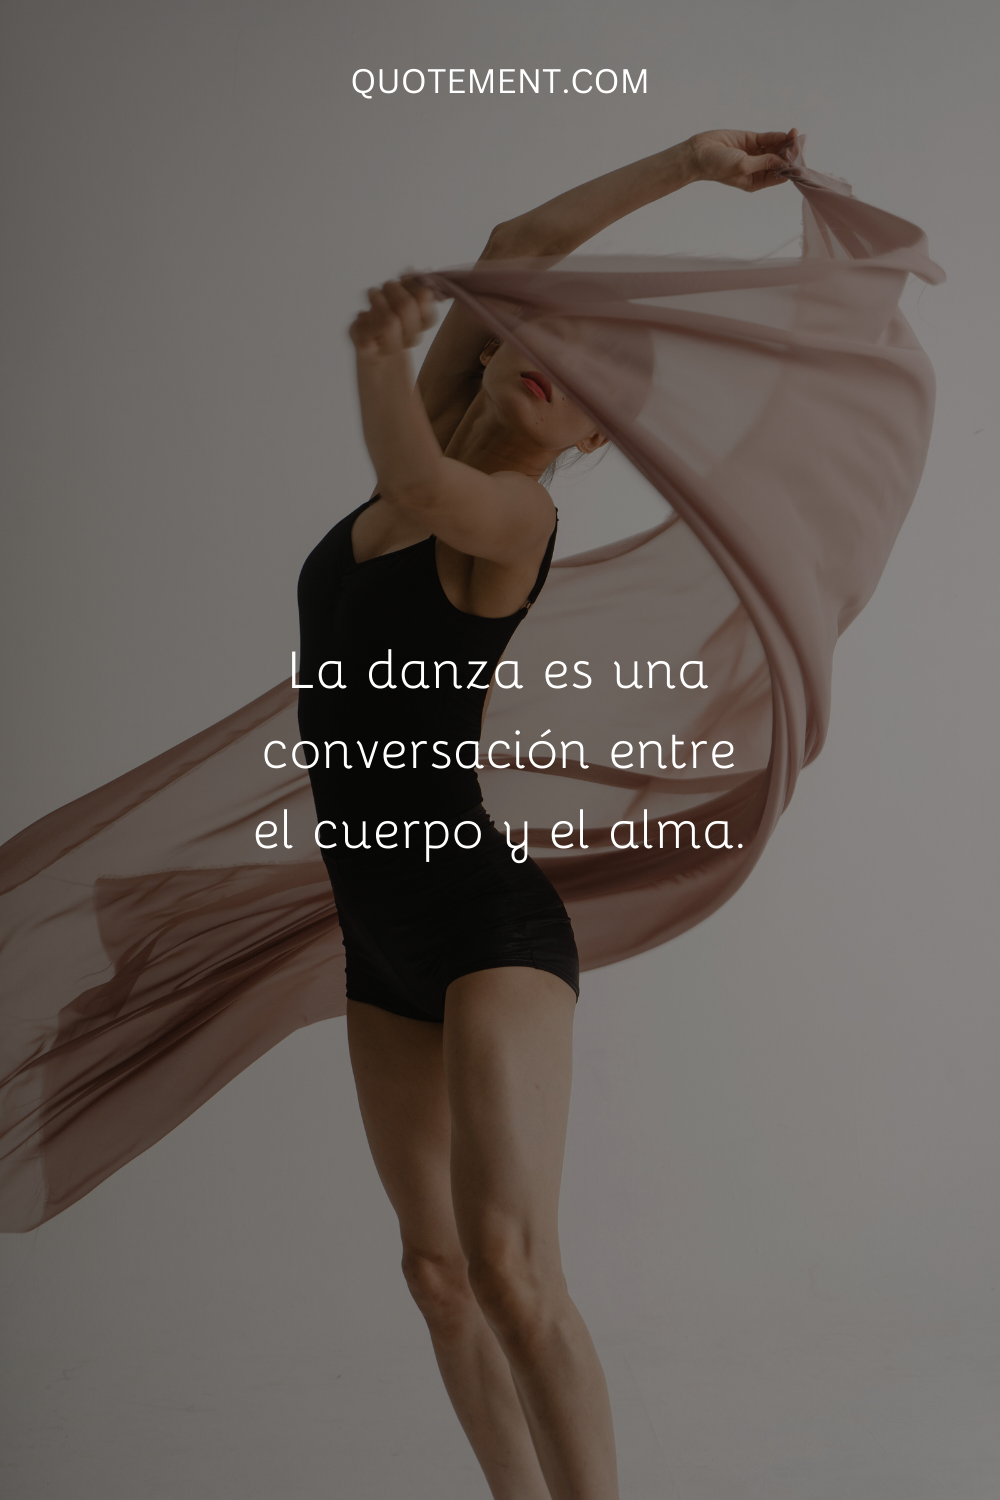 La danza es una conversación entre el cuerpo y el alma